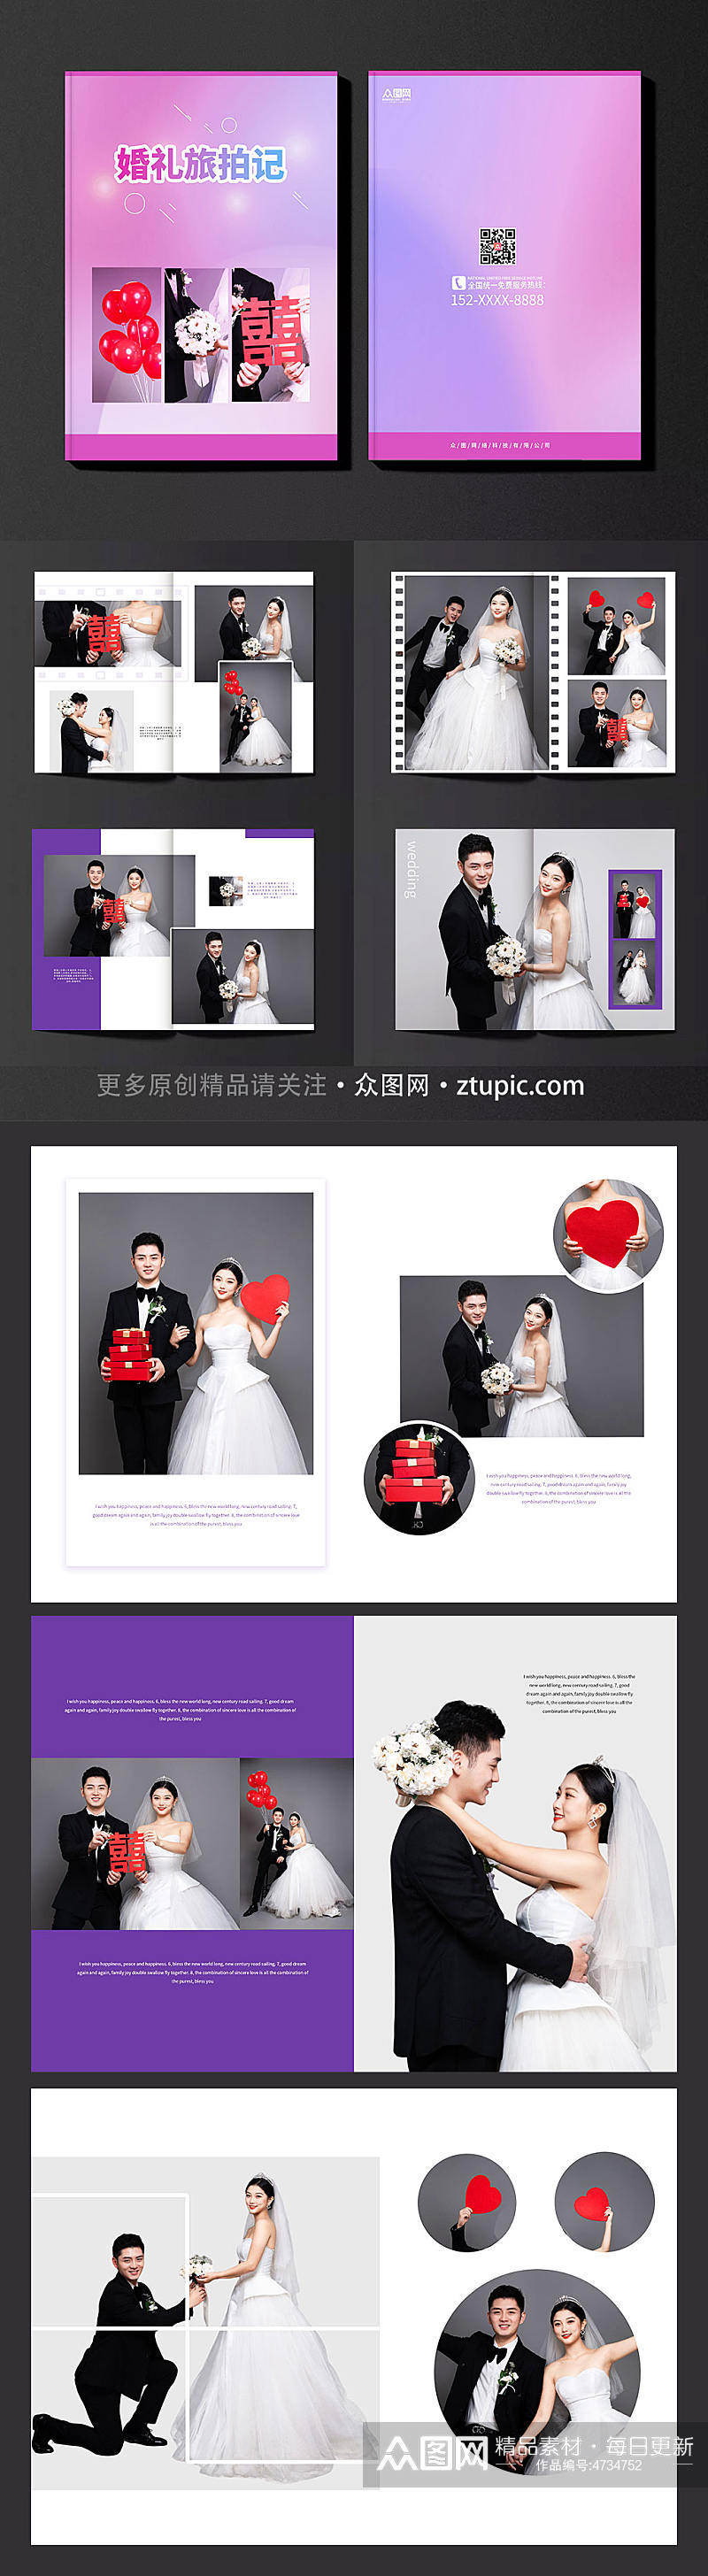 紫色背景旅拍婚礼宣传画册素材